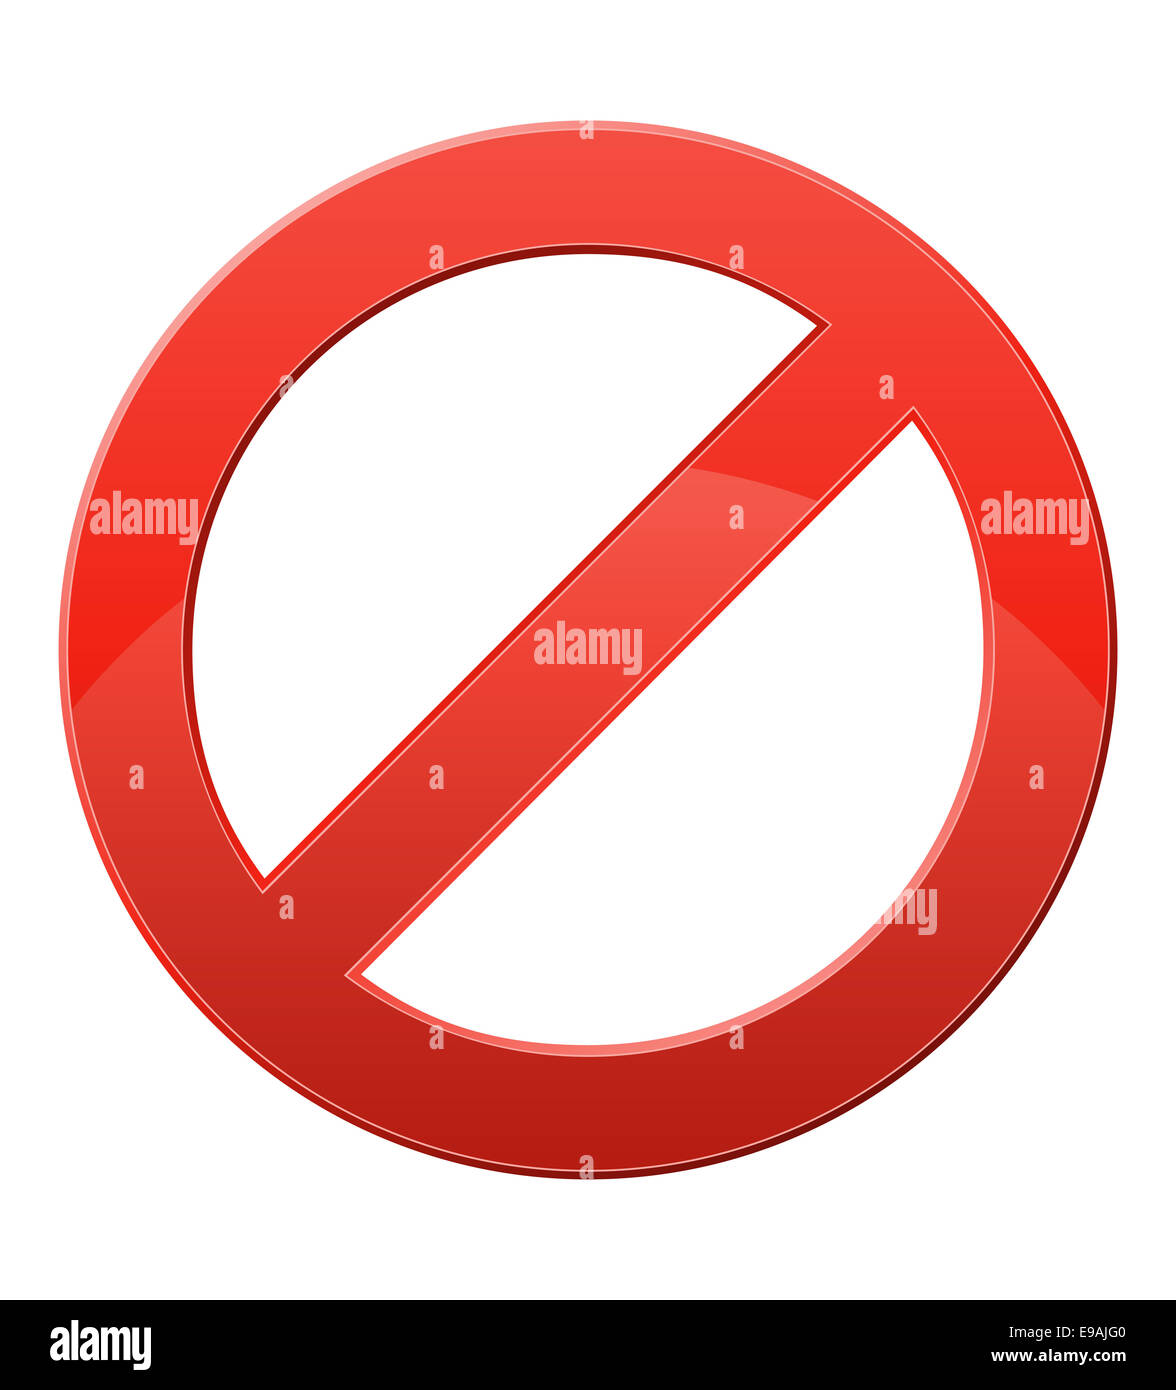 prohibitory sign illustration isolated on white background Stock Photo